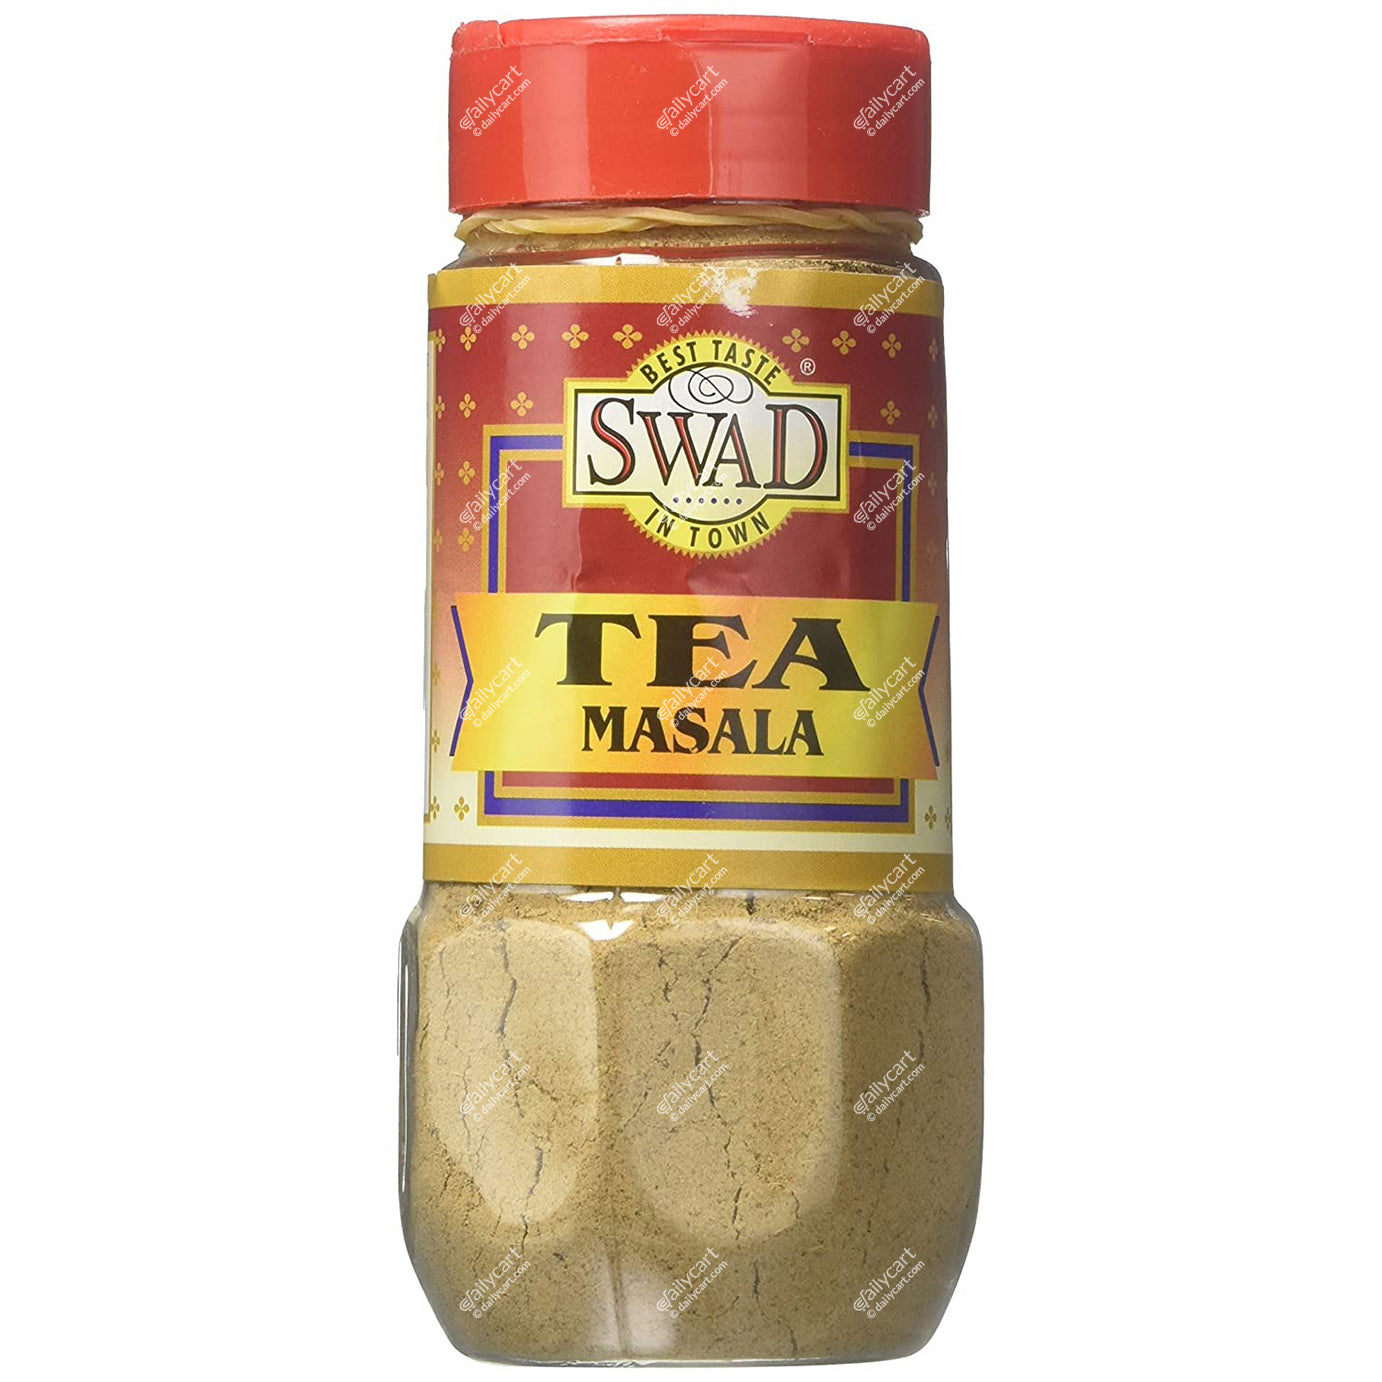 Swad Tea Masala, 100 g